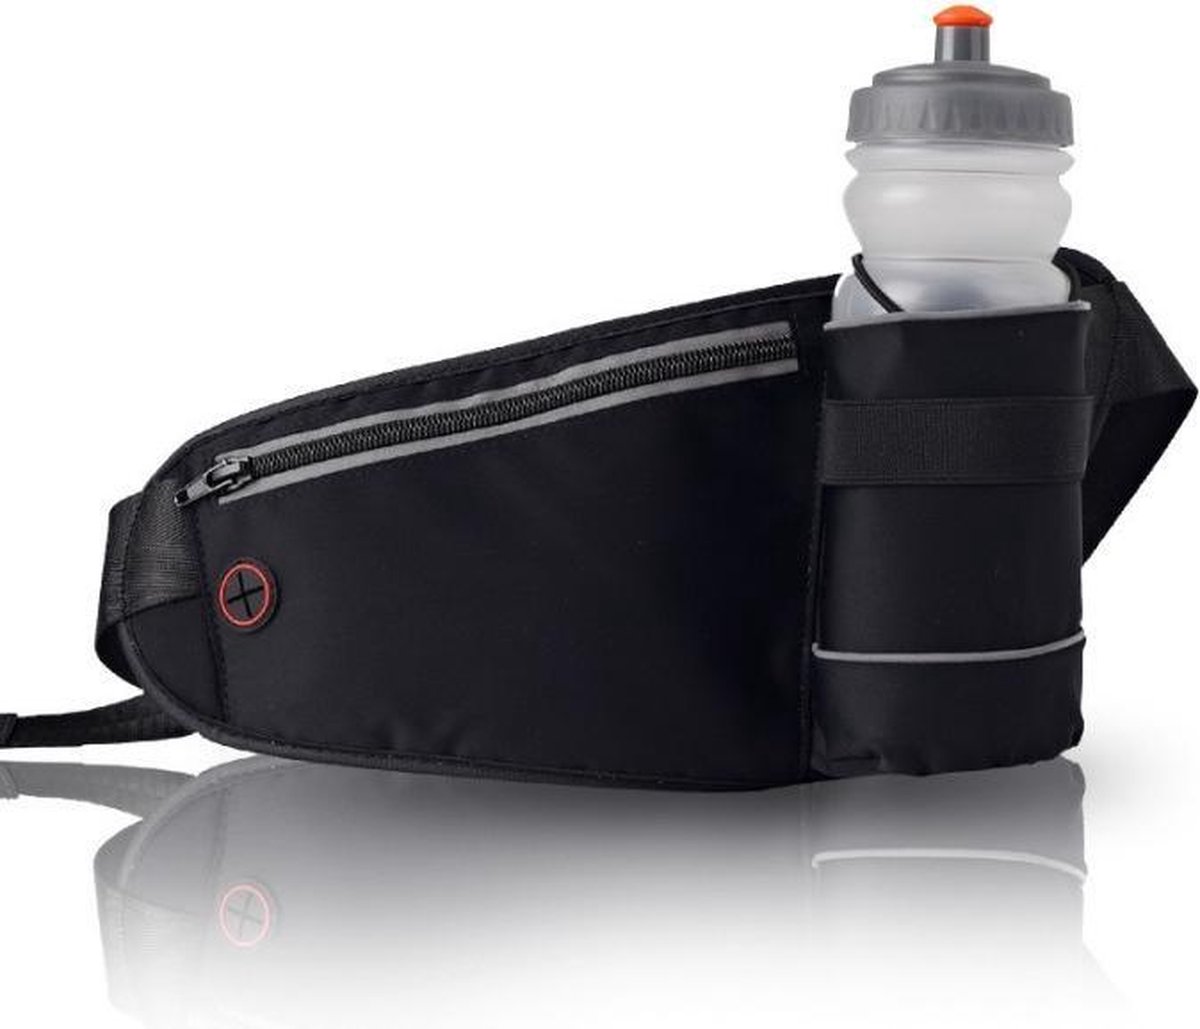 Heupband Running belts, waterdichte heuptas met drinkwatergordel, verstelbare sportriemtas voor hardlopen en wandelen - zwart